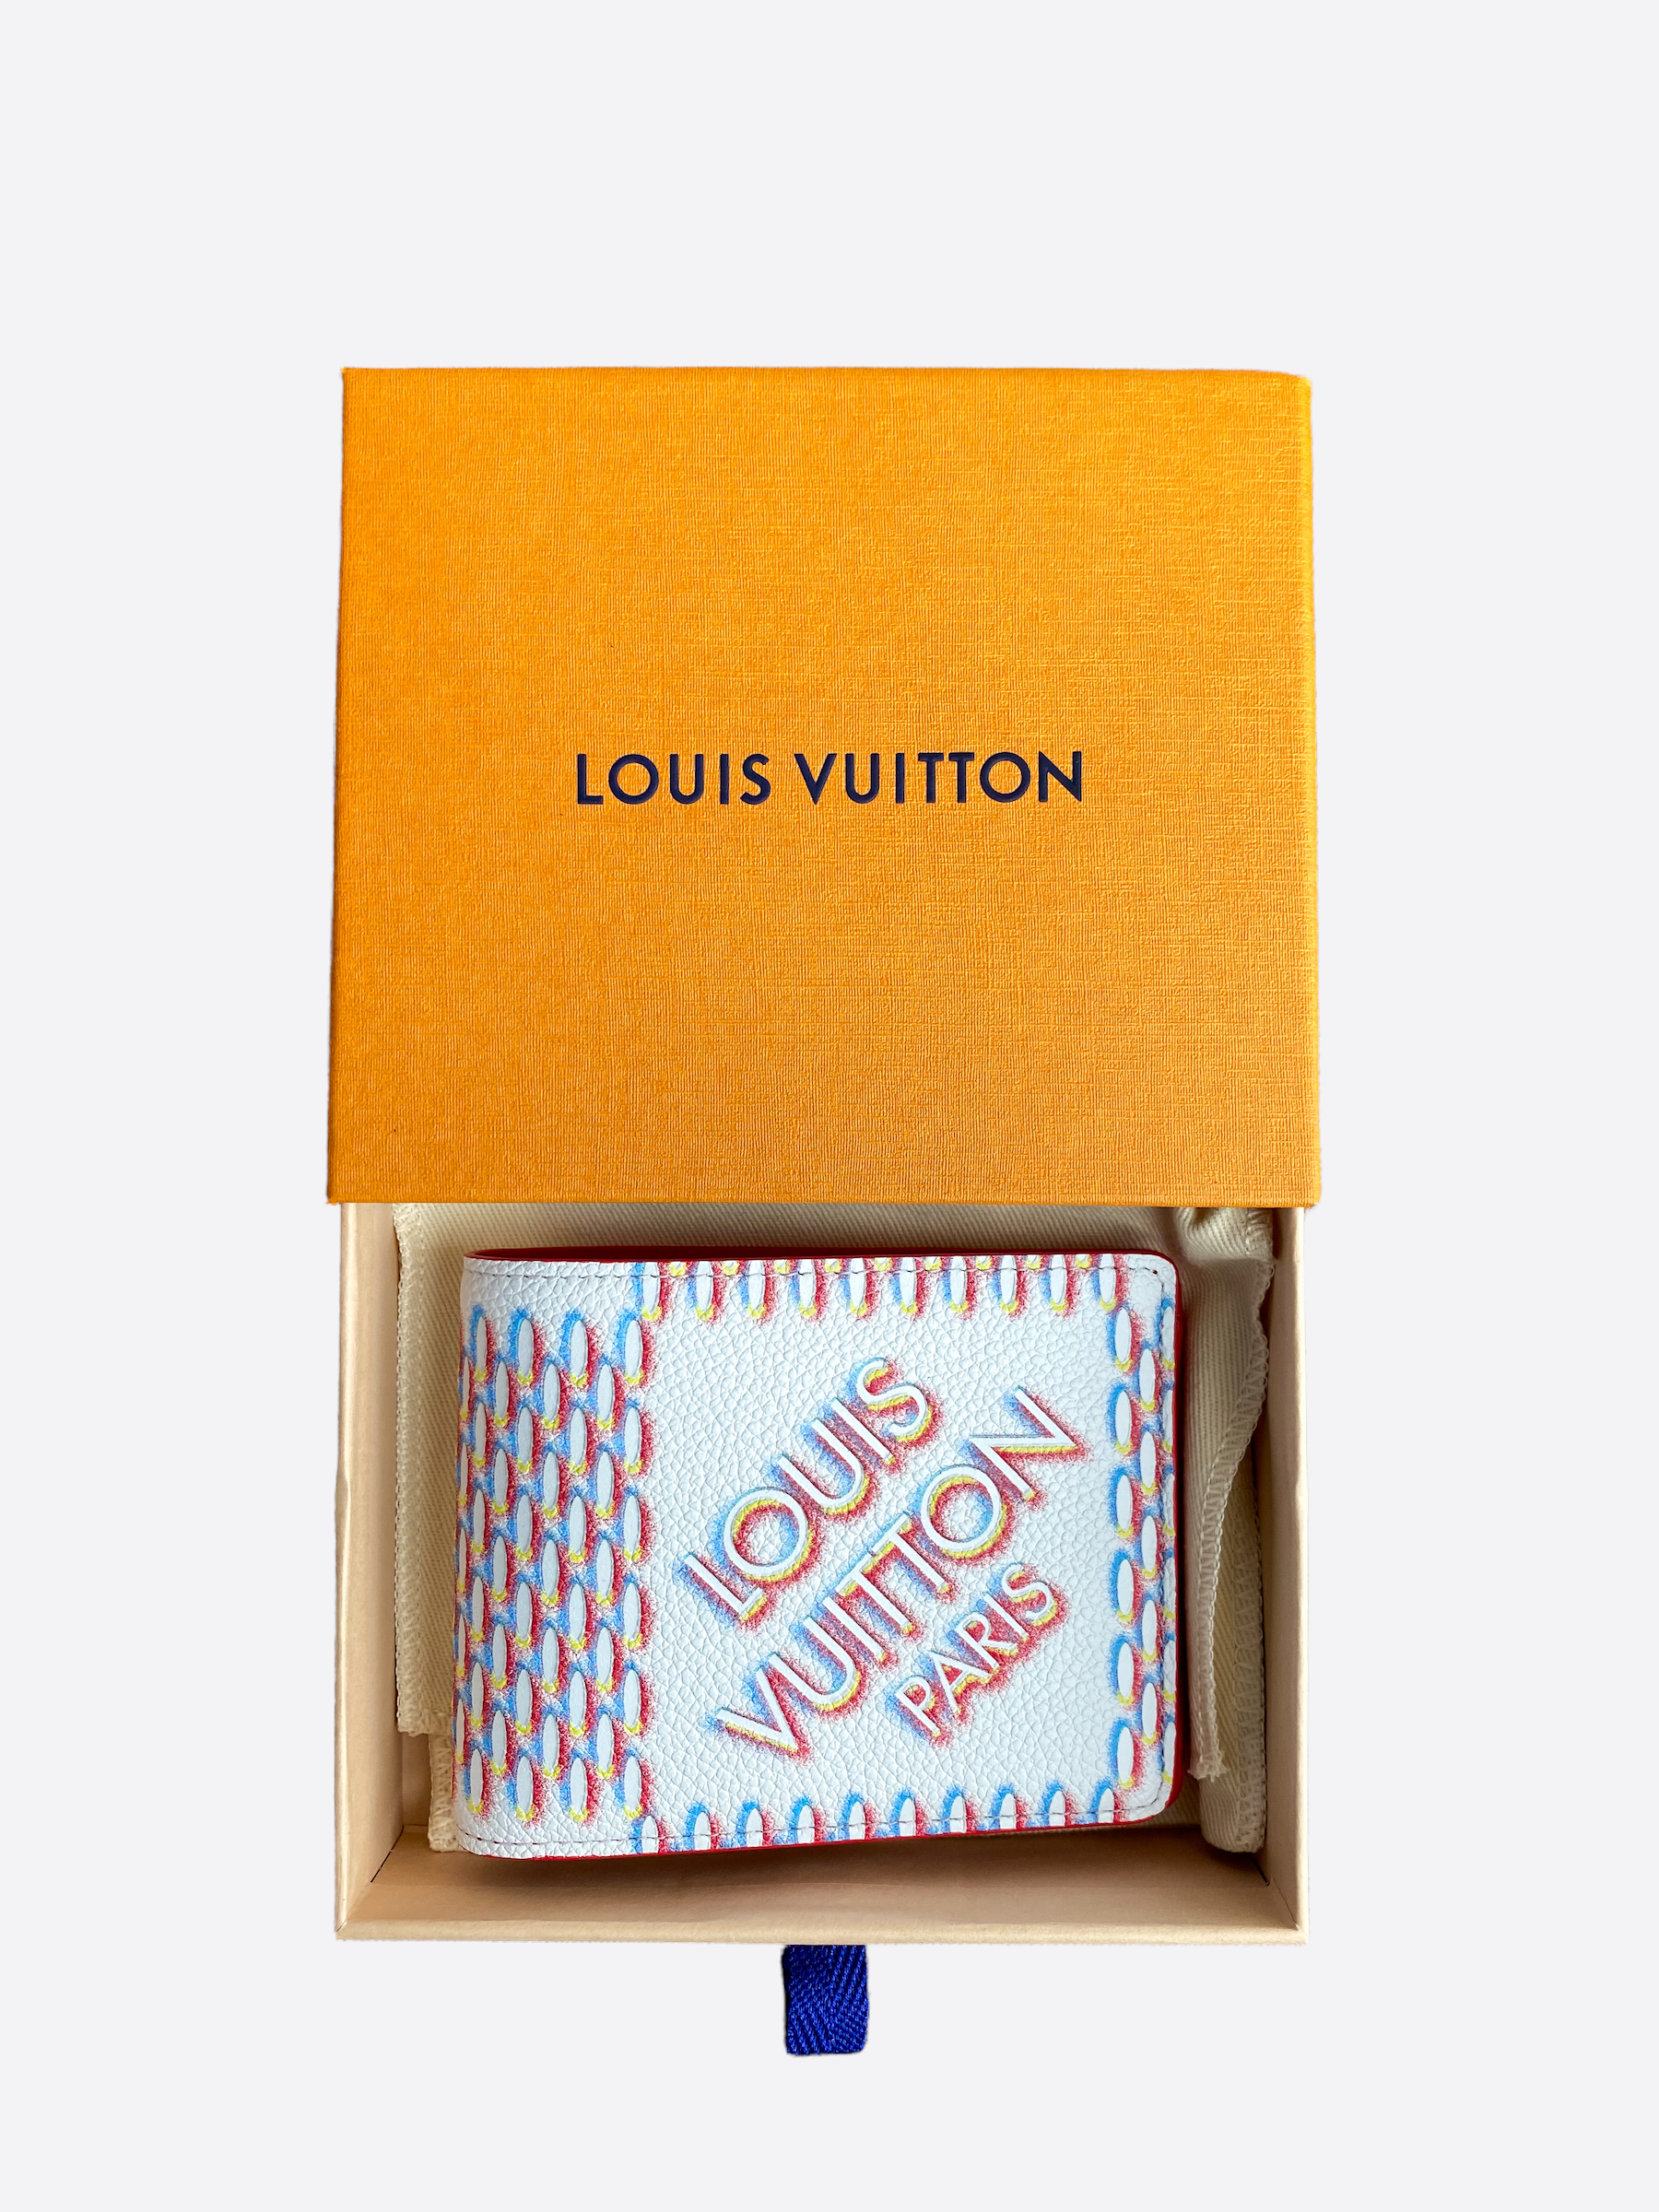 Authentic Louis Vuitton Damier Ebene Multiple Men's Wallet